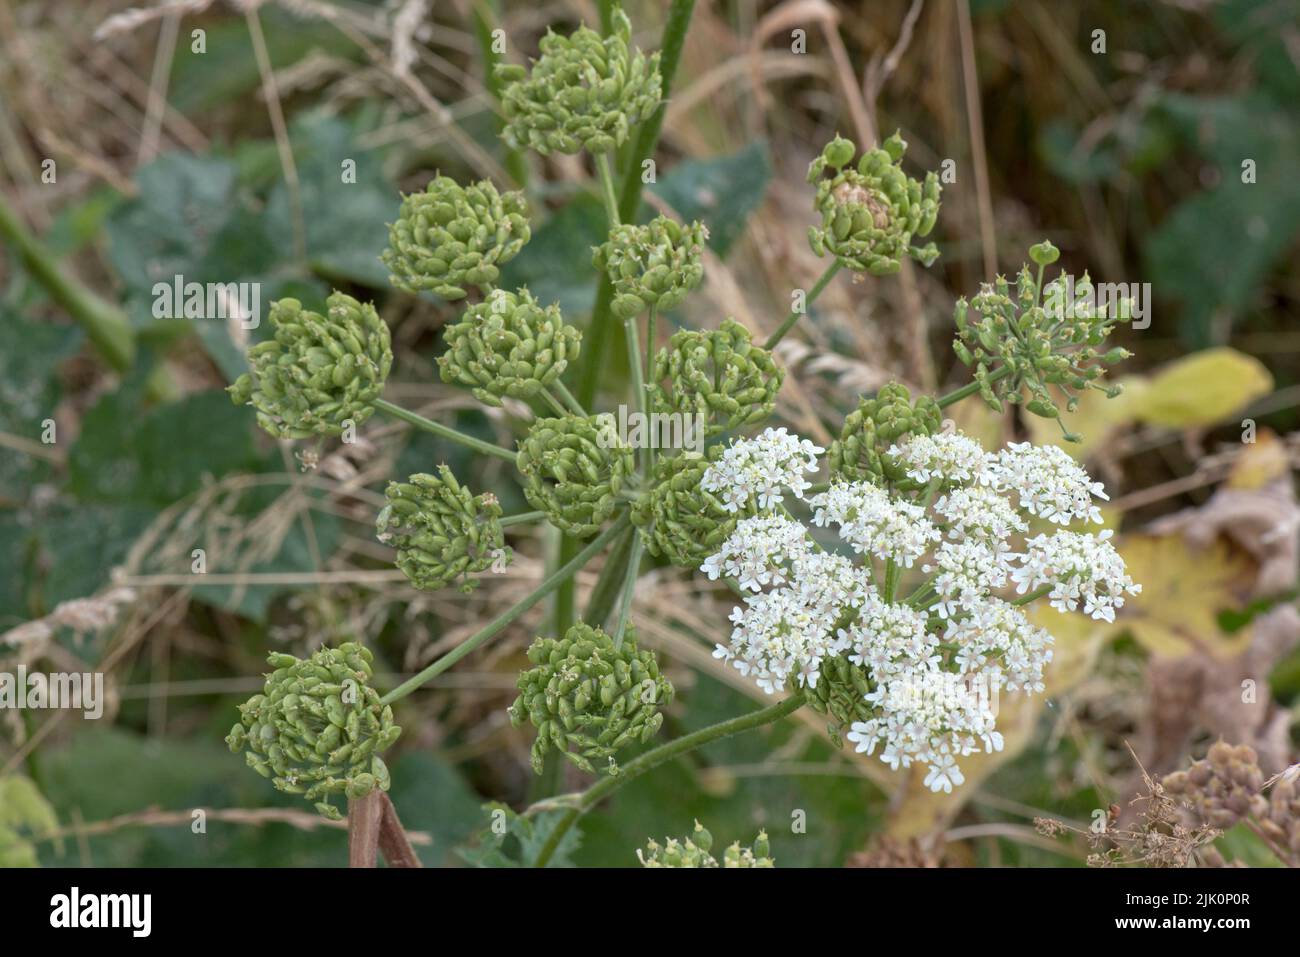 Têtes de graines mûres vertes et brunes mûres d'herbe à poux et de fleur blanche (Heracleum sphondylium), Berkshire, juillet Banque D'Images